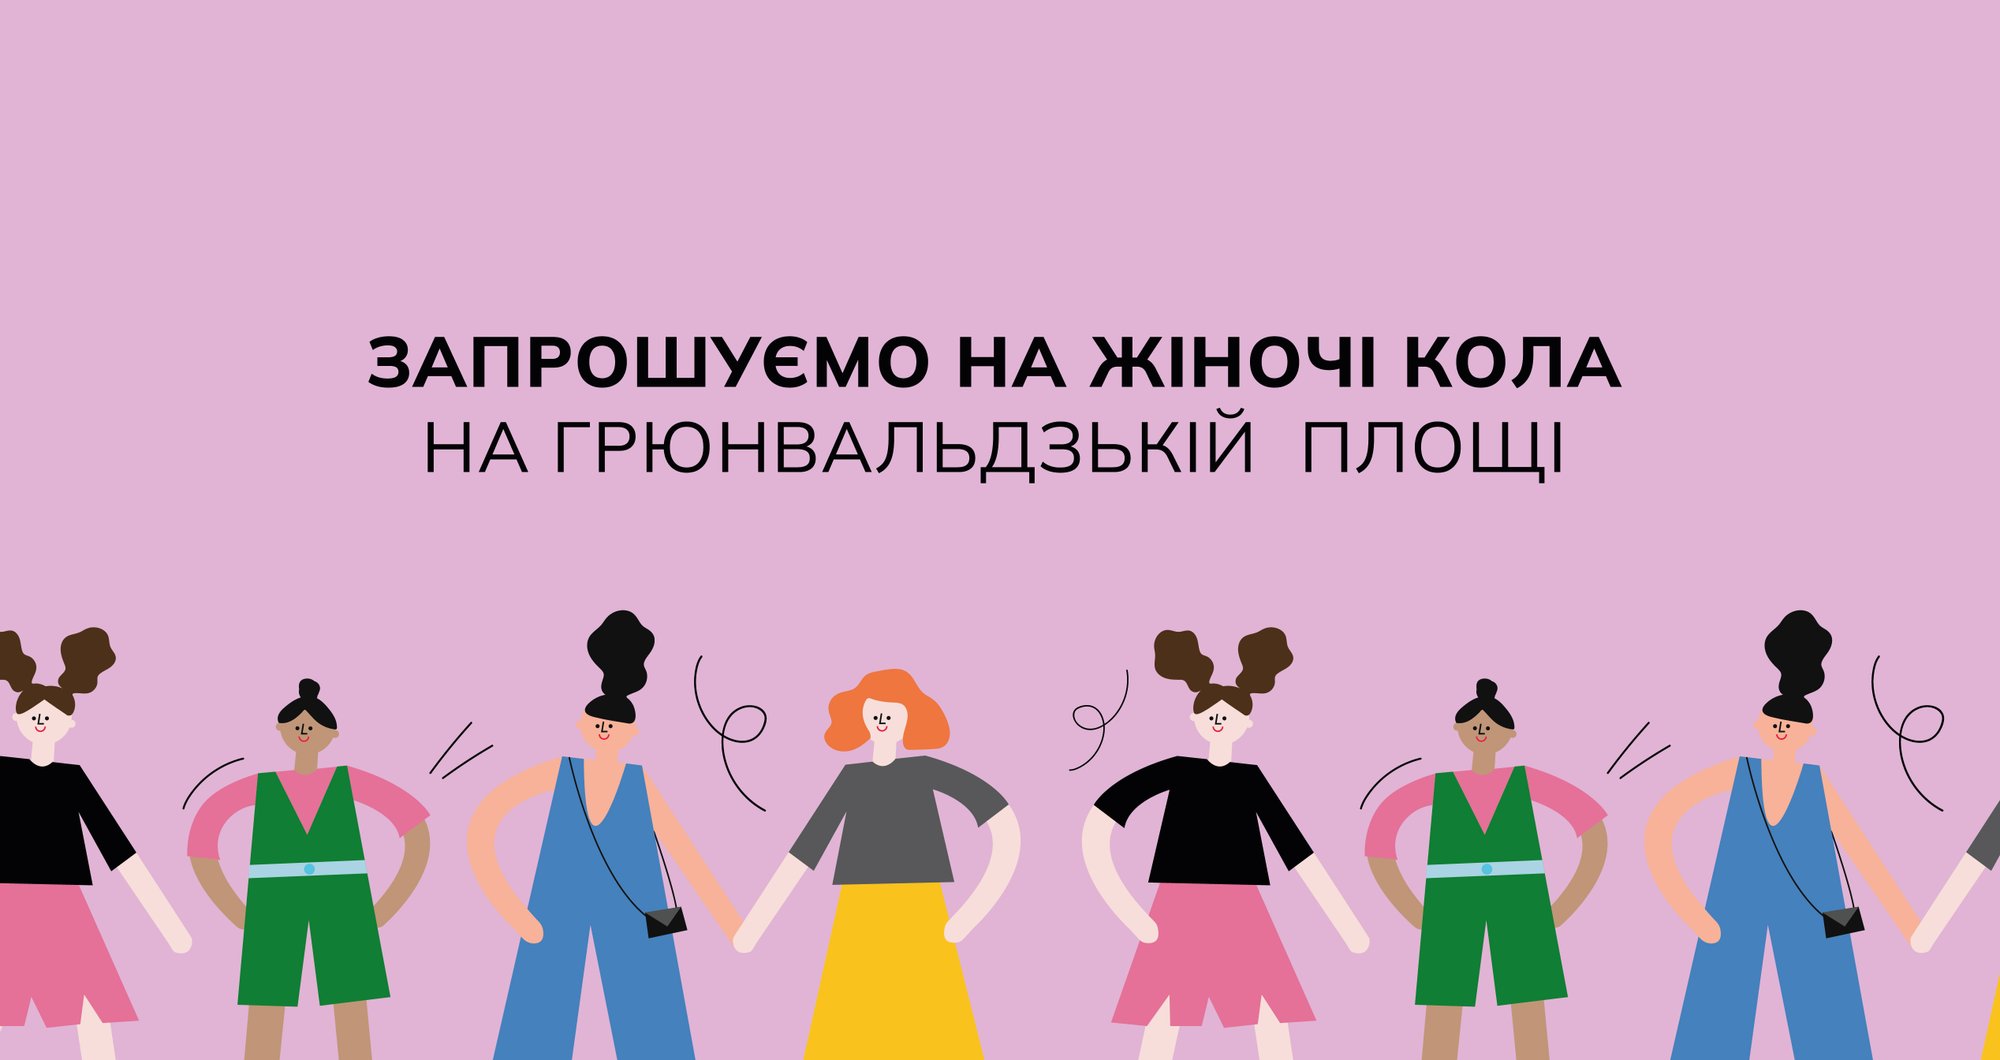 Grafika na fioletowym tle, na środku czarny napis w języku ukraińskim: Kręgi kobiet na Placu Grunwaldzkim. Poniżej rysunki różnorodnych postaci kobiecych.